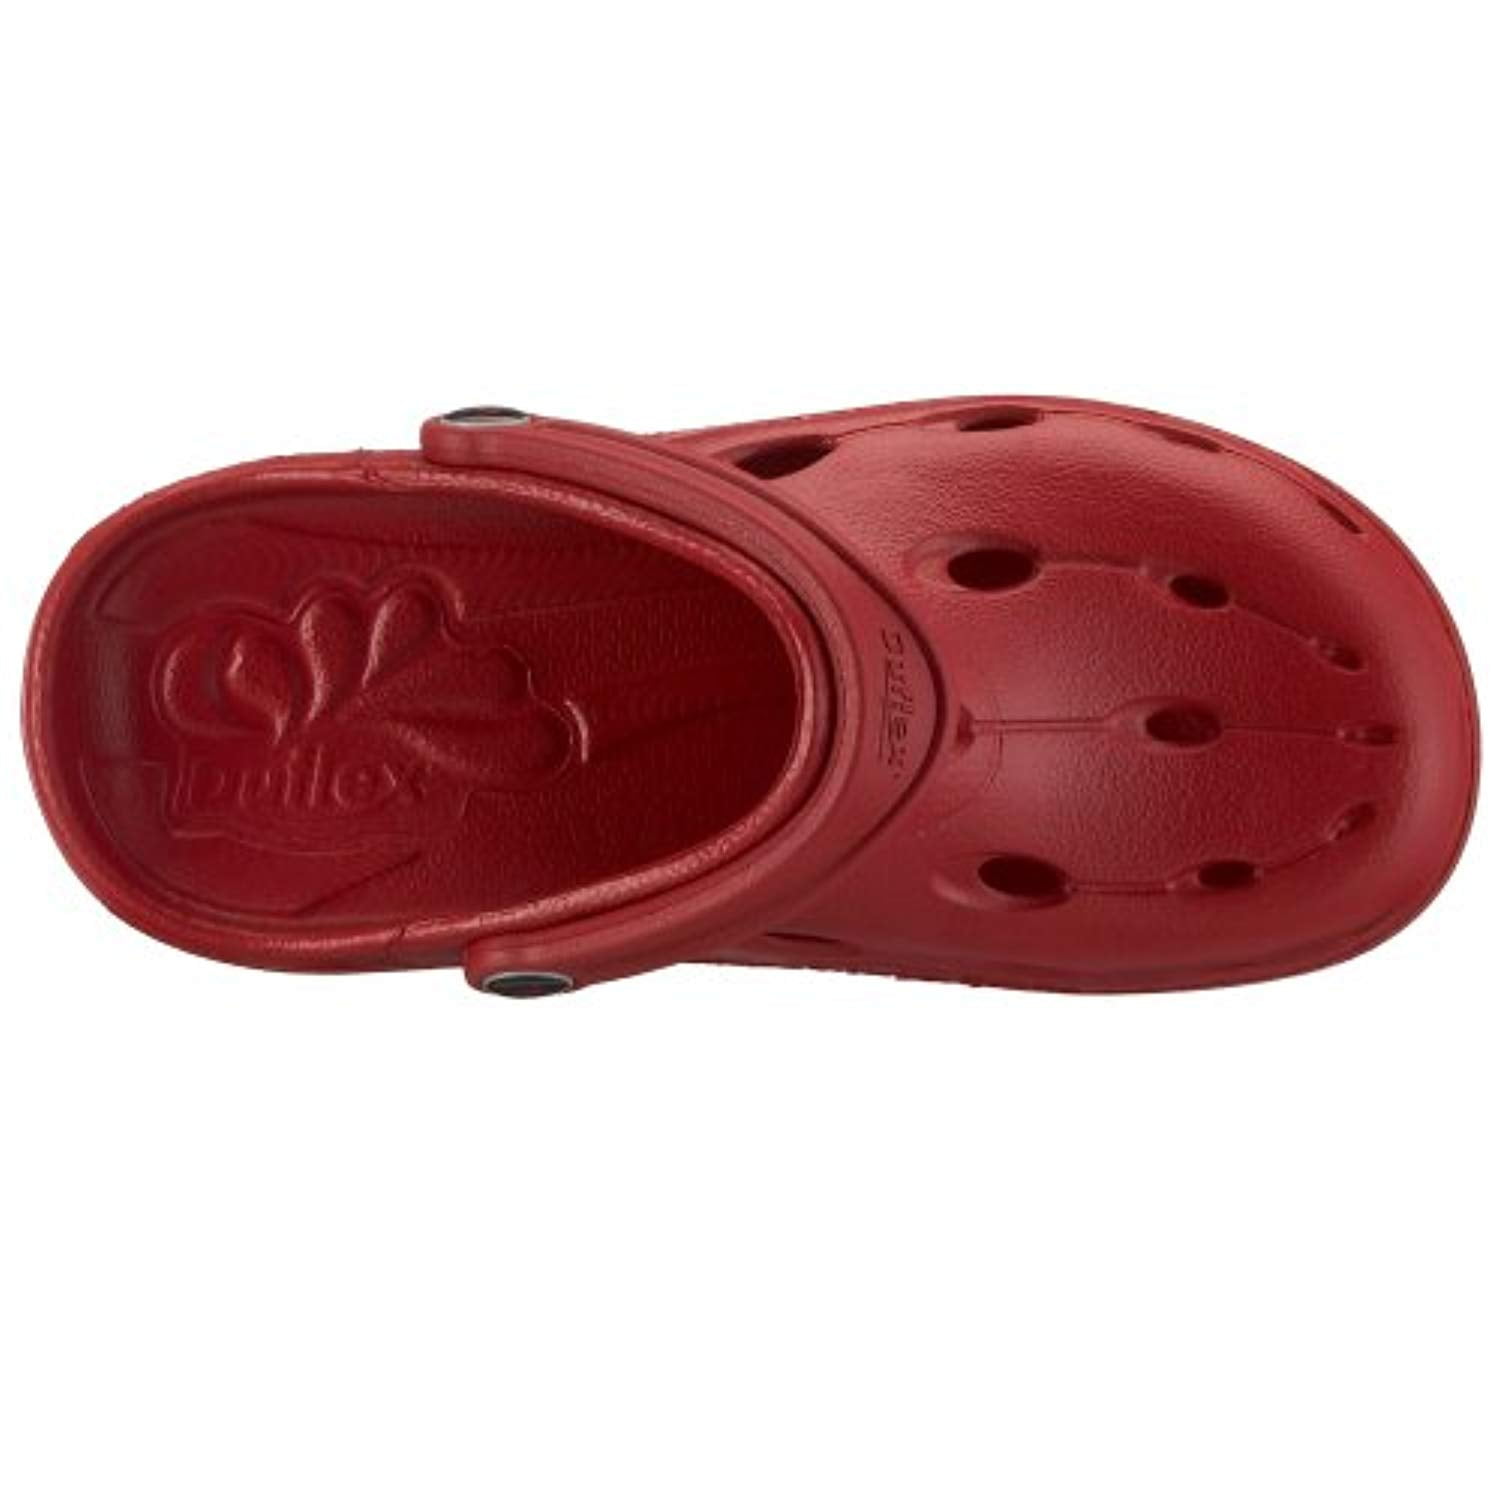 Chung shi-DUX-bleu riviera Duflex sandales chaussures sabots 8900310 nouveau t 36-49 